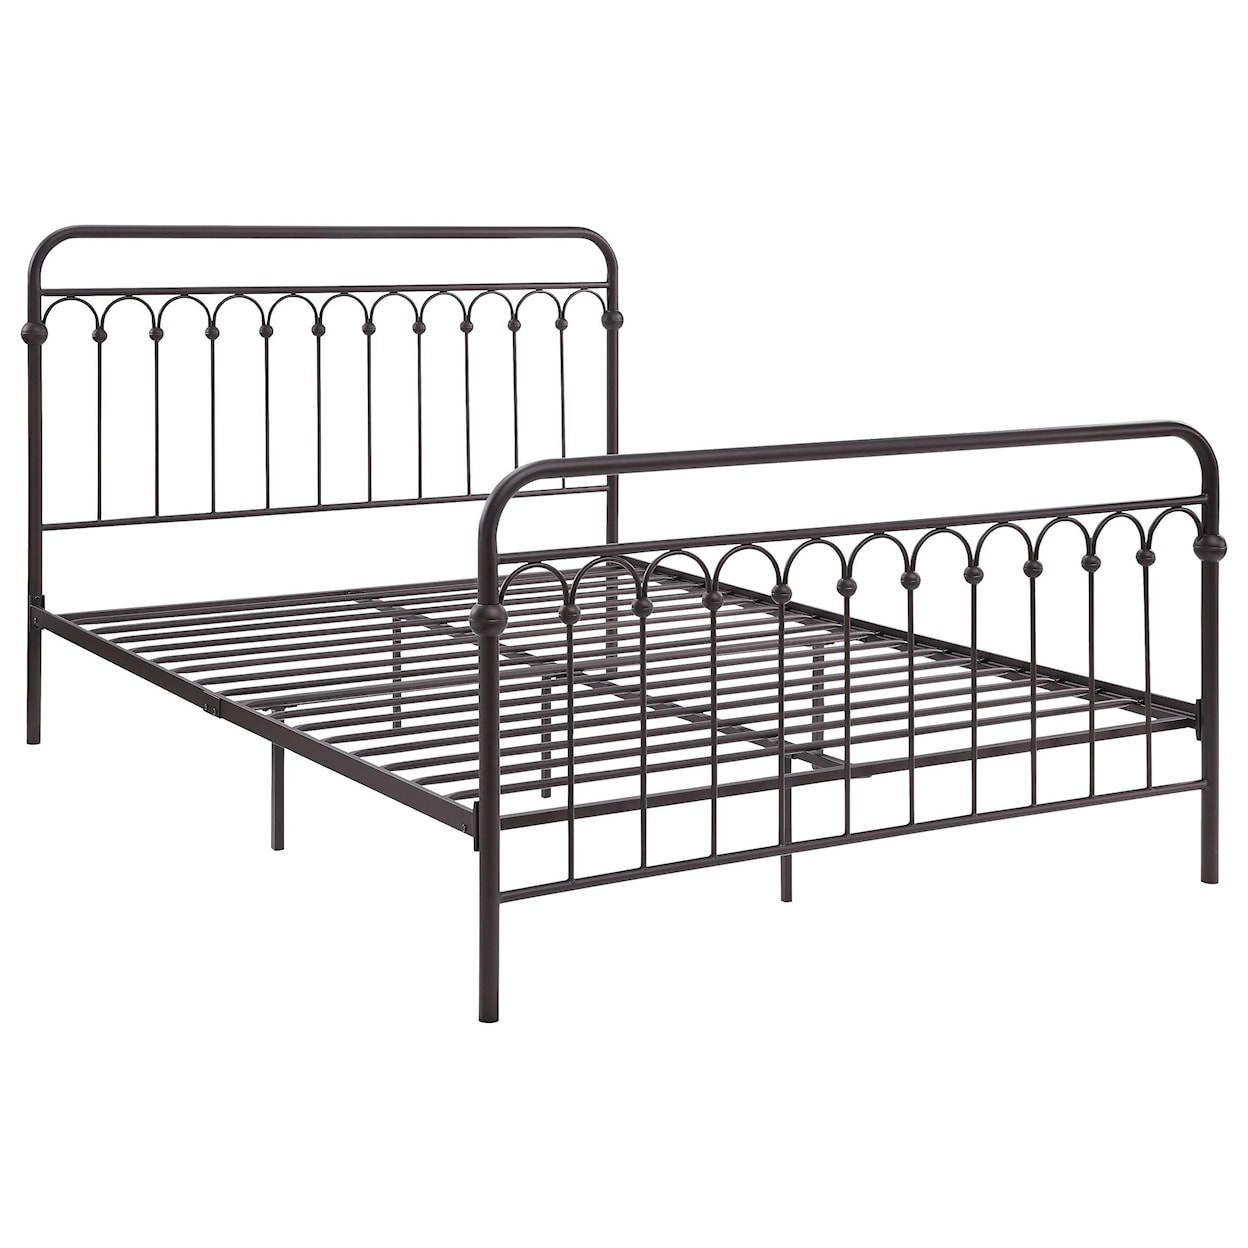 Homelegance Metal Beds Queen Metal Platform Bed